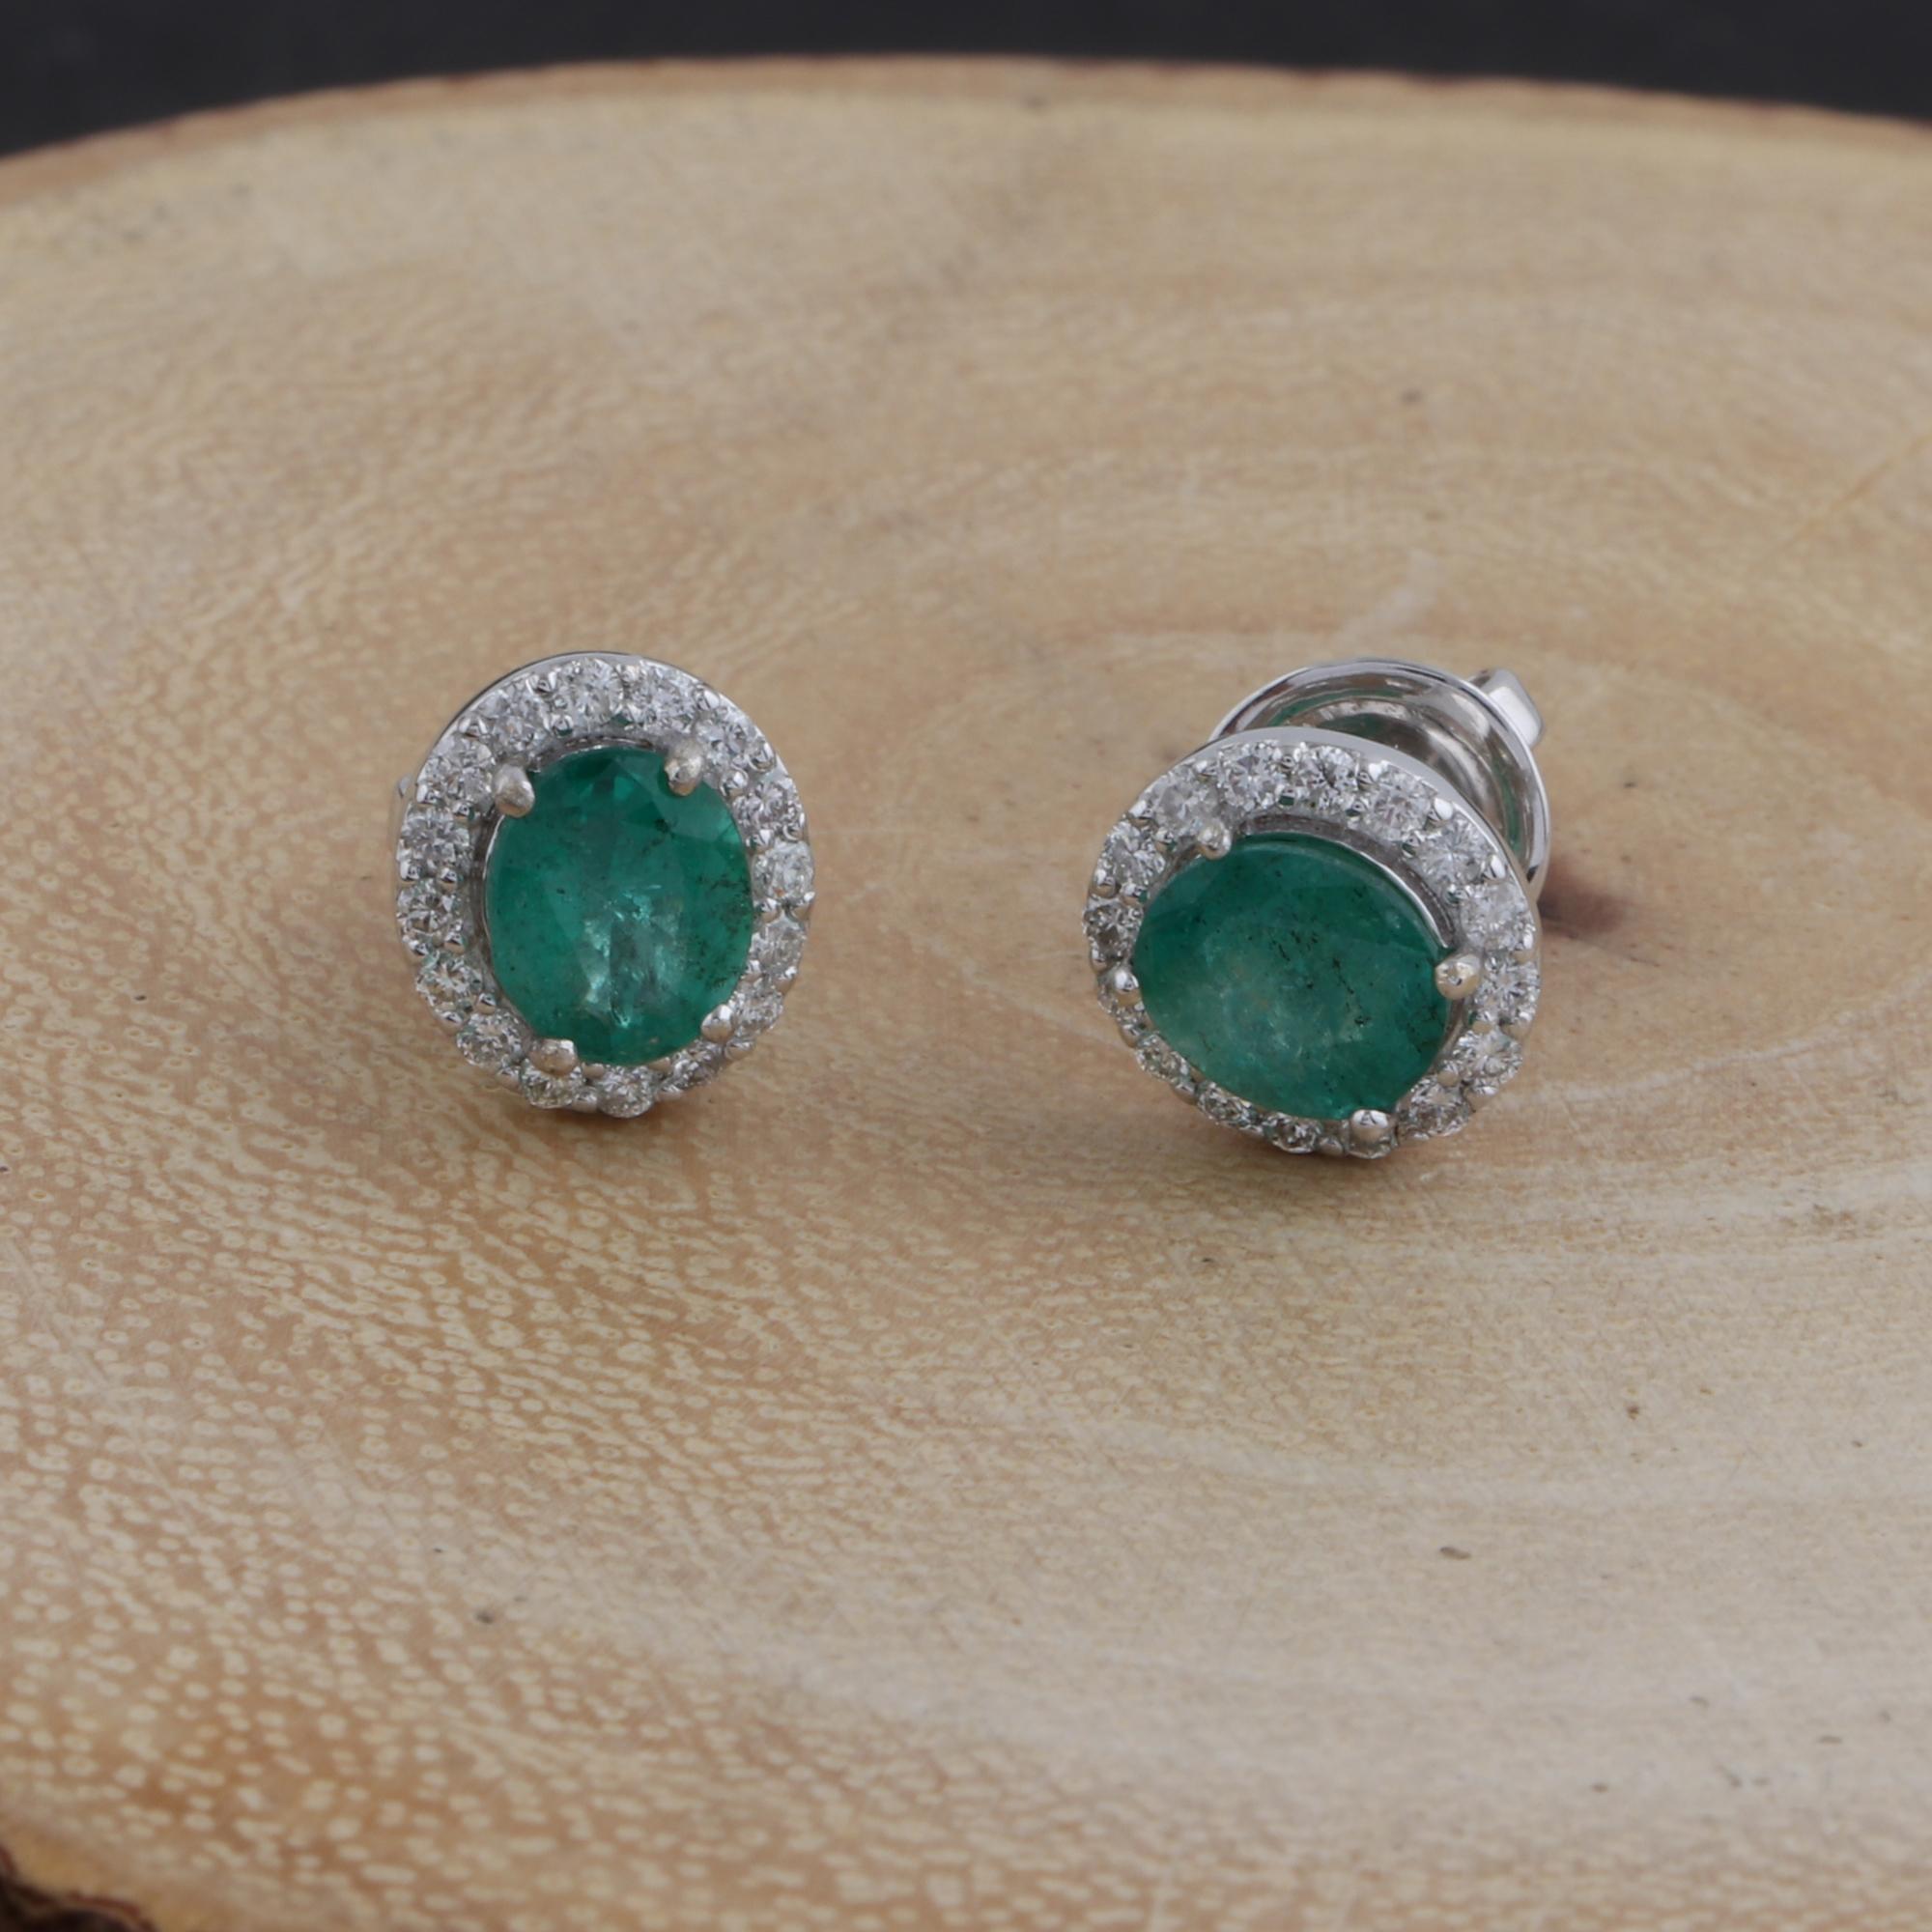 Women's Real Oval Zambia Emerald Gemstone Earrings Diamond 18 Karat White Gold Jewelry For Sale